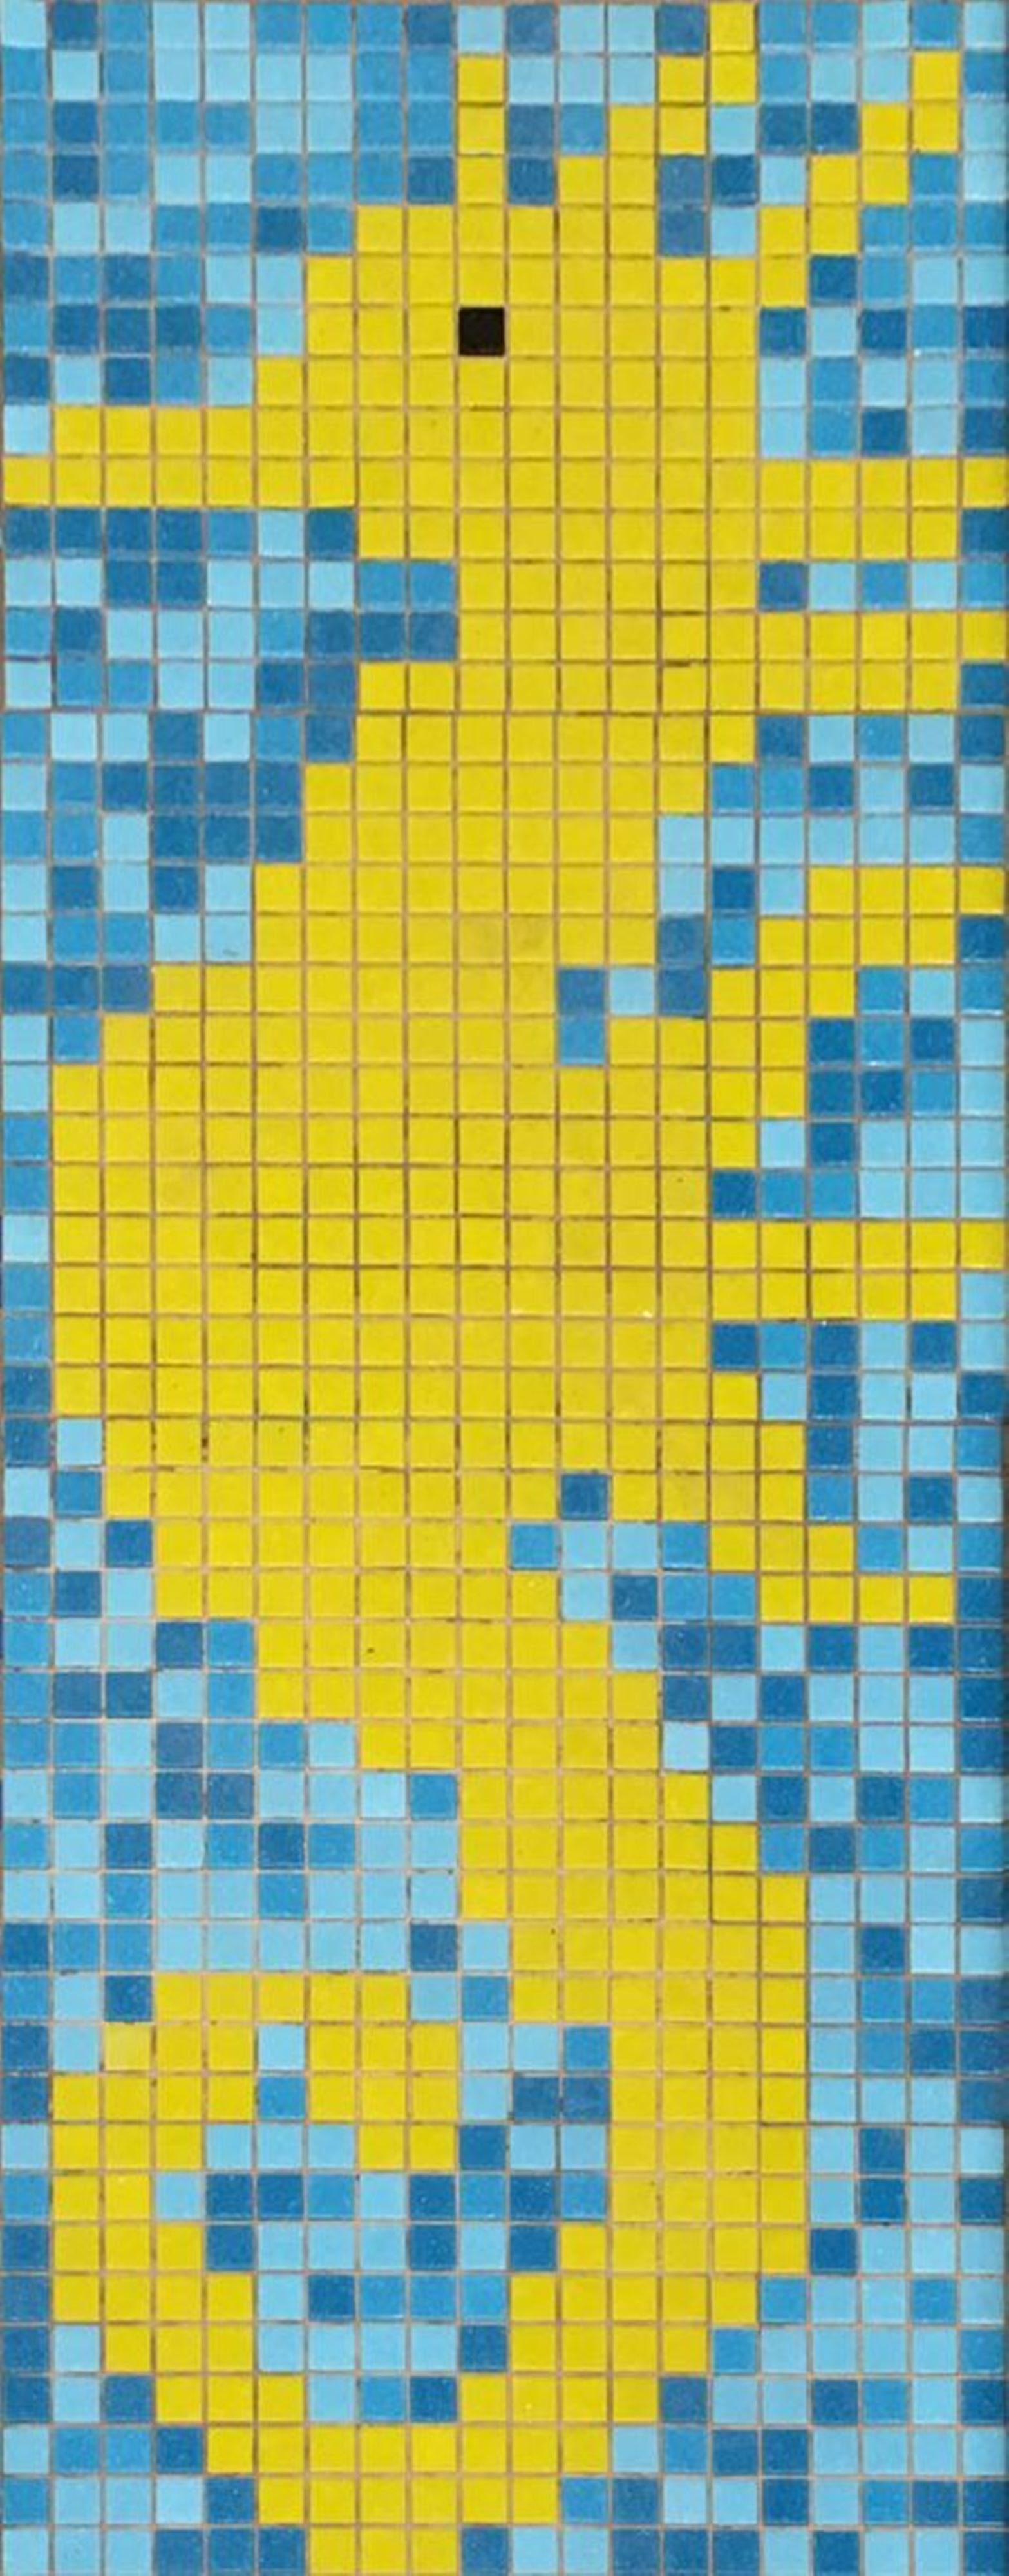 Mosani Mosaikfliesen Seepferdchen Bild Poolboden Glasmosaik, Set, Papierverklebt | Fliesen